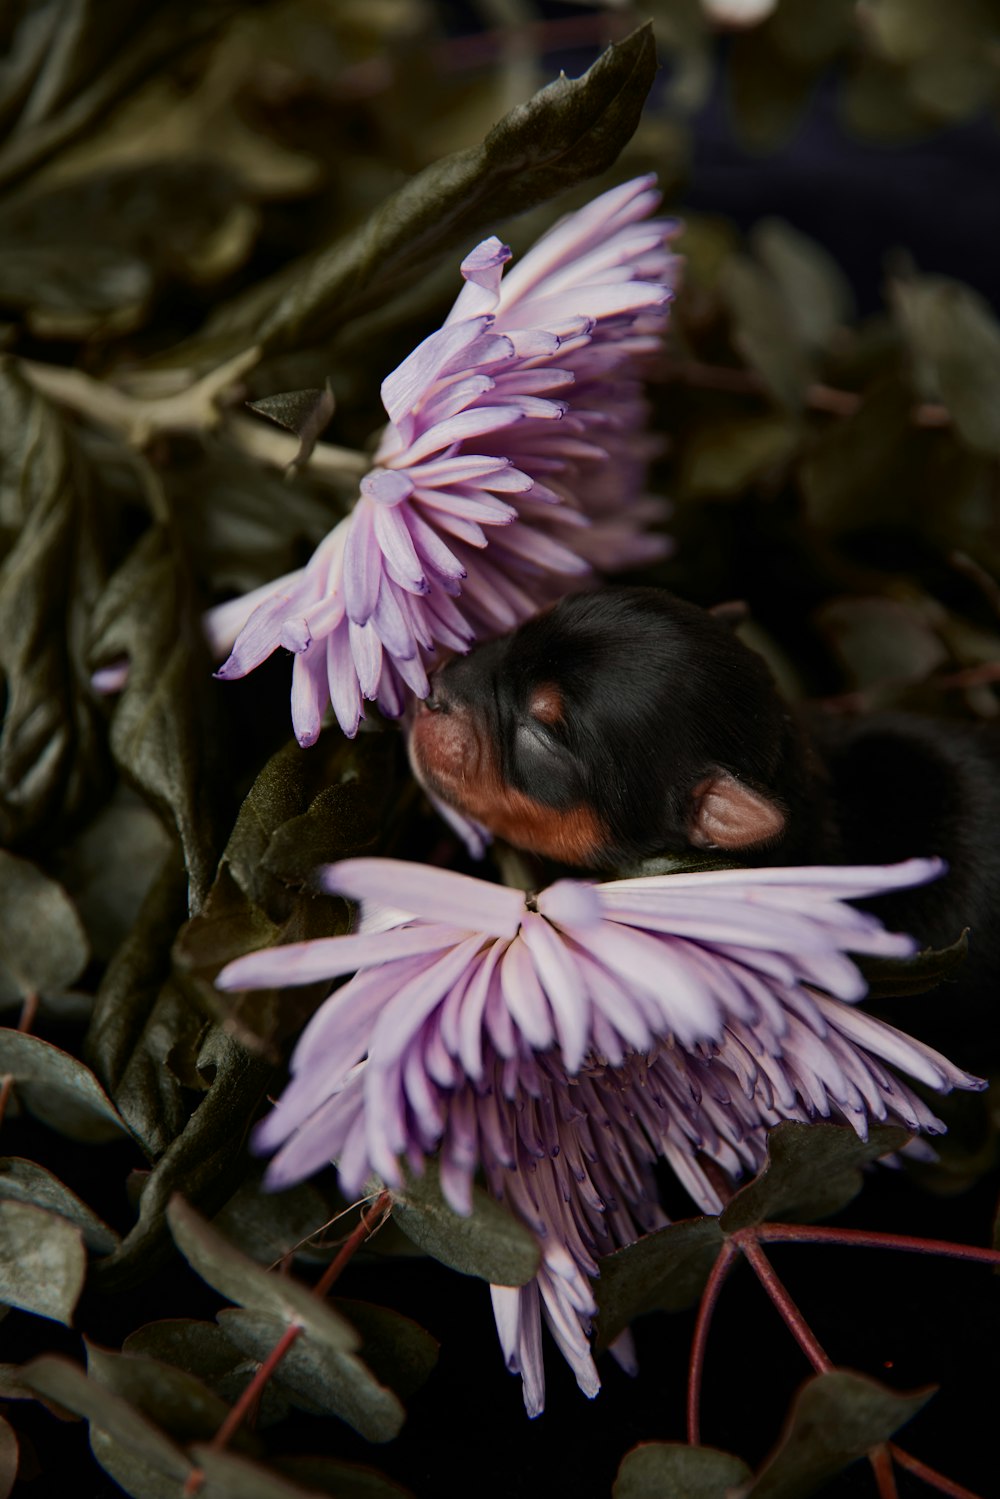 보라색 꽃 위에 누워있는 검은 색과 갈색 개